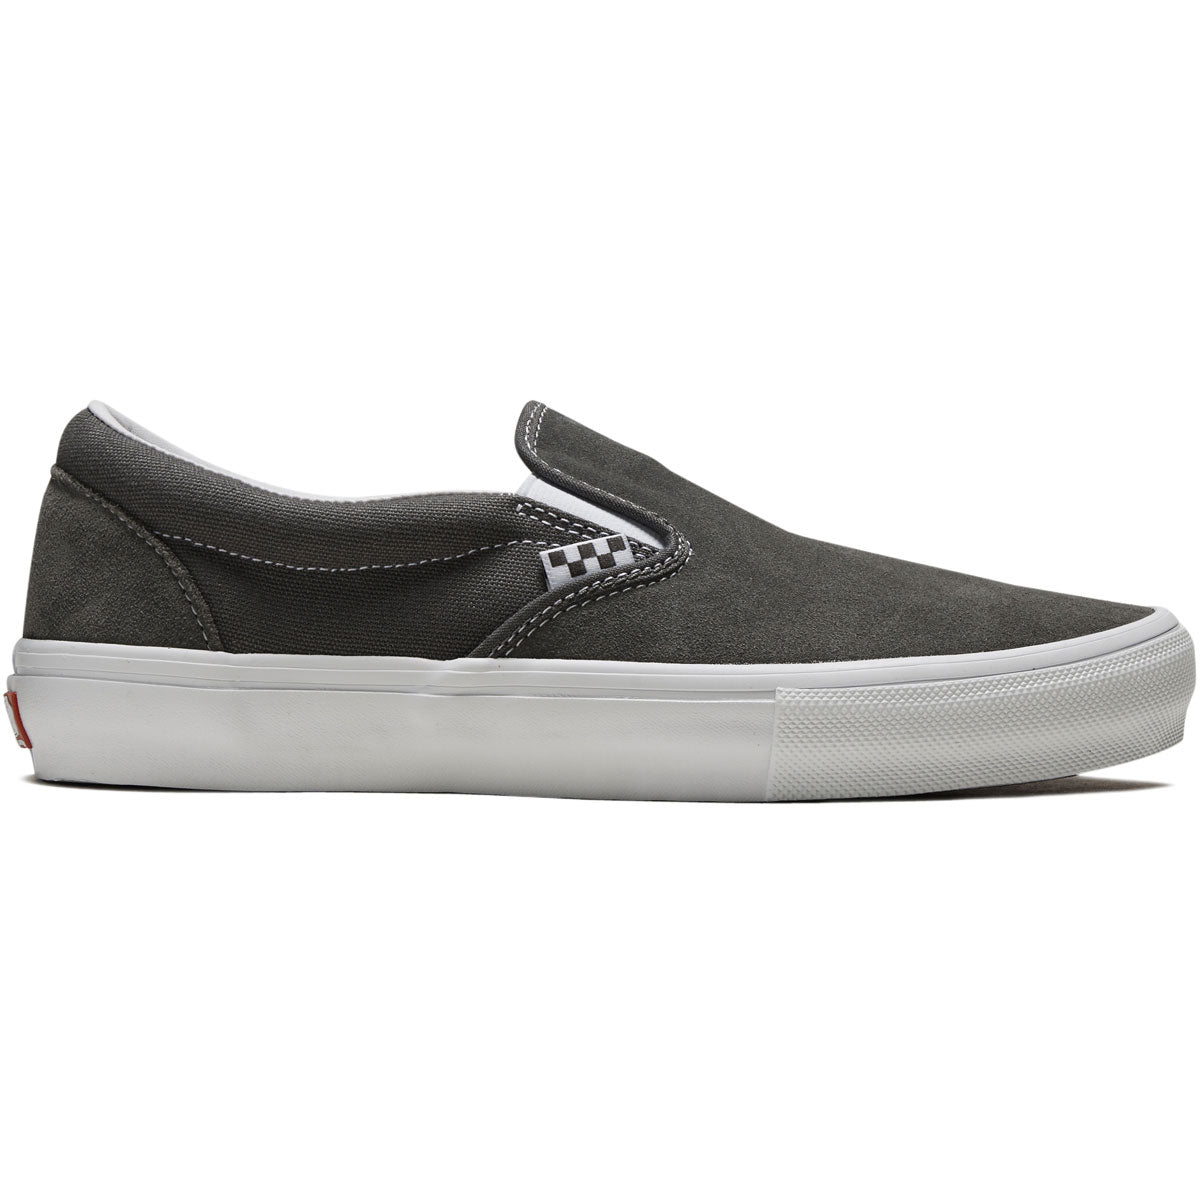 Vans Skate Slip-on Shoes - Pewter/True White image 1